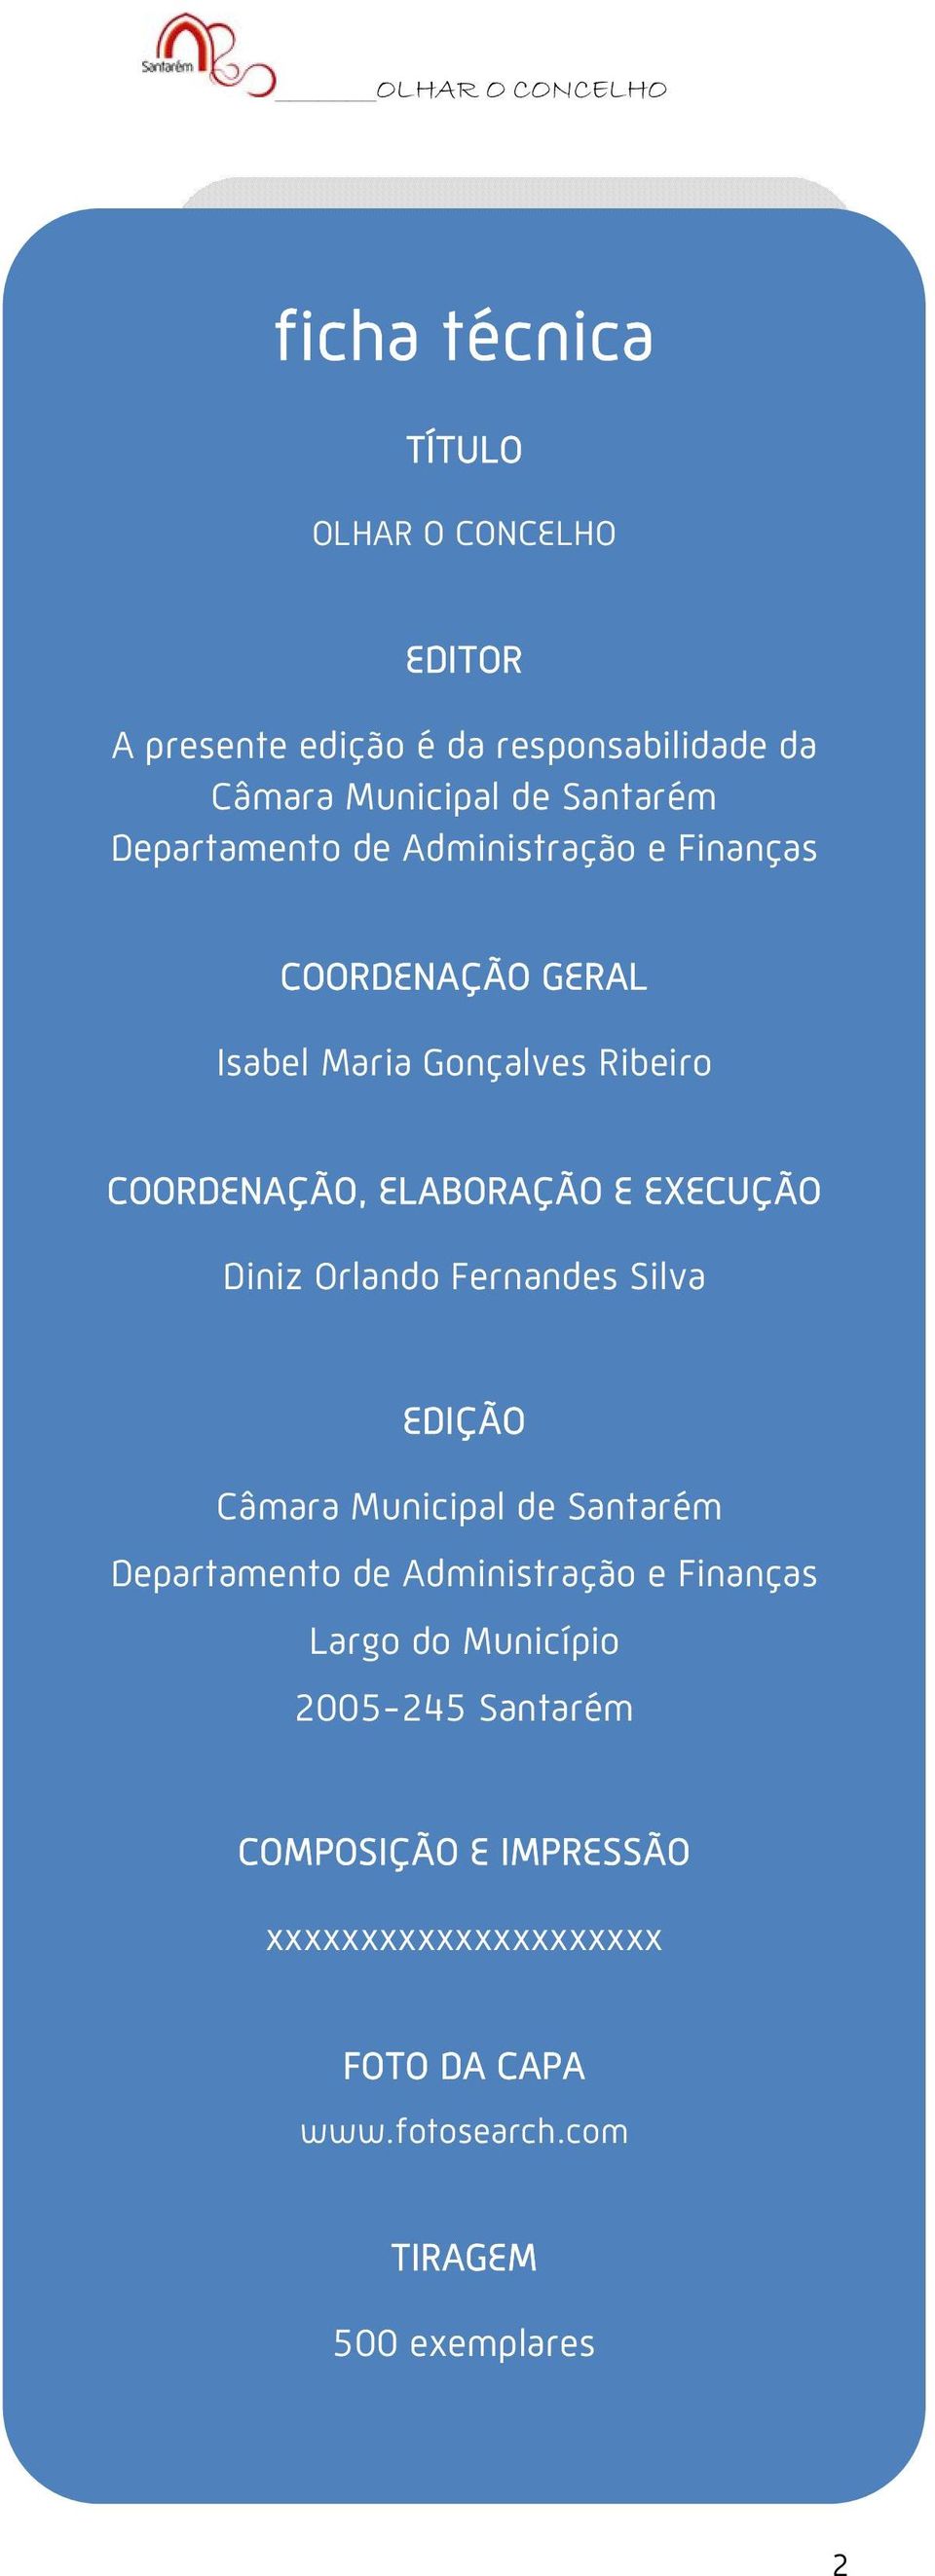 EXECUÇÃO Diniz Orlando Fernandes Silva EDIÇÃO Câmara Municipal de Santarém Departamento de Administração e Finanças Largo